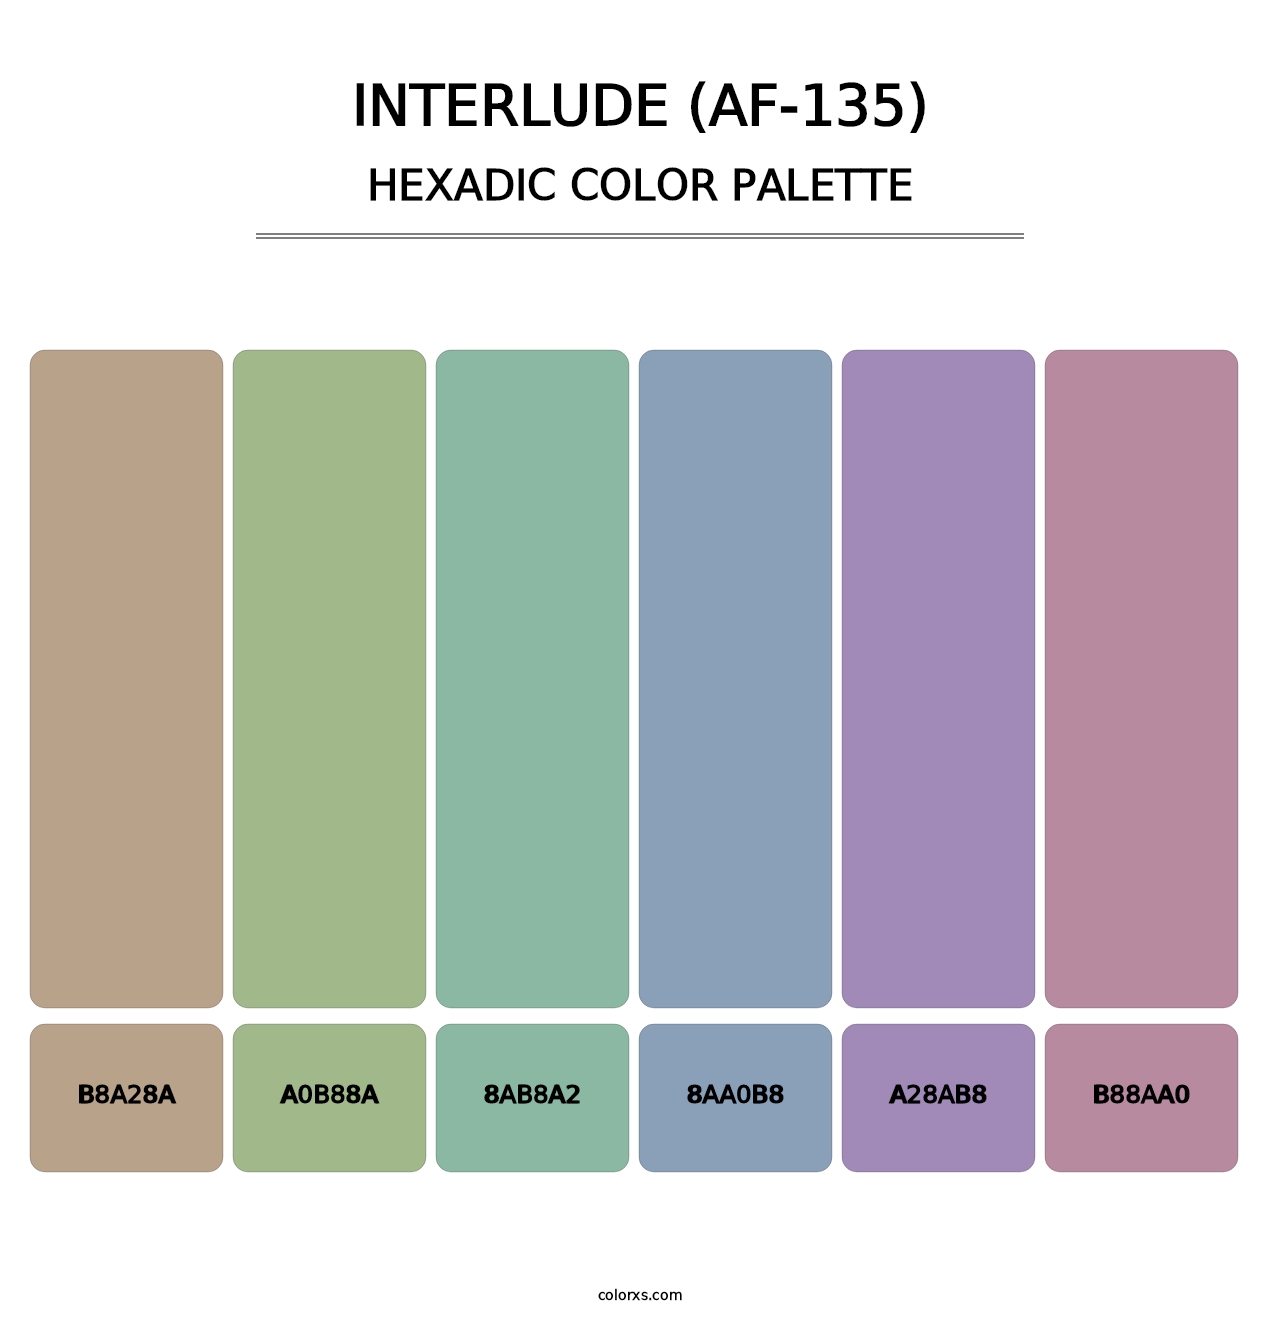 Interlude (AF-135) - Hexadic Color Palette